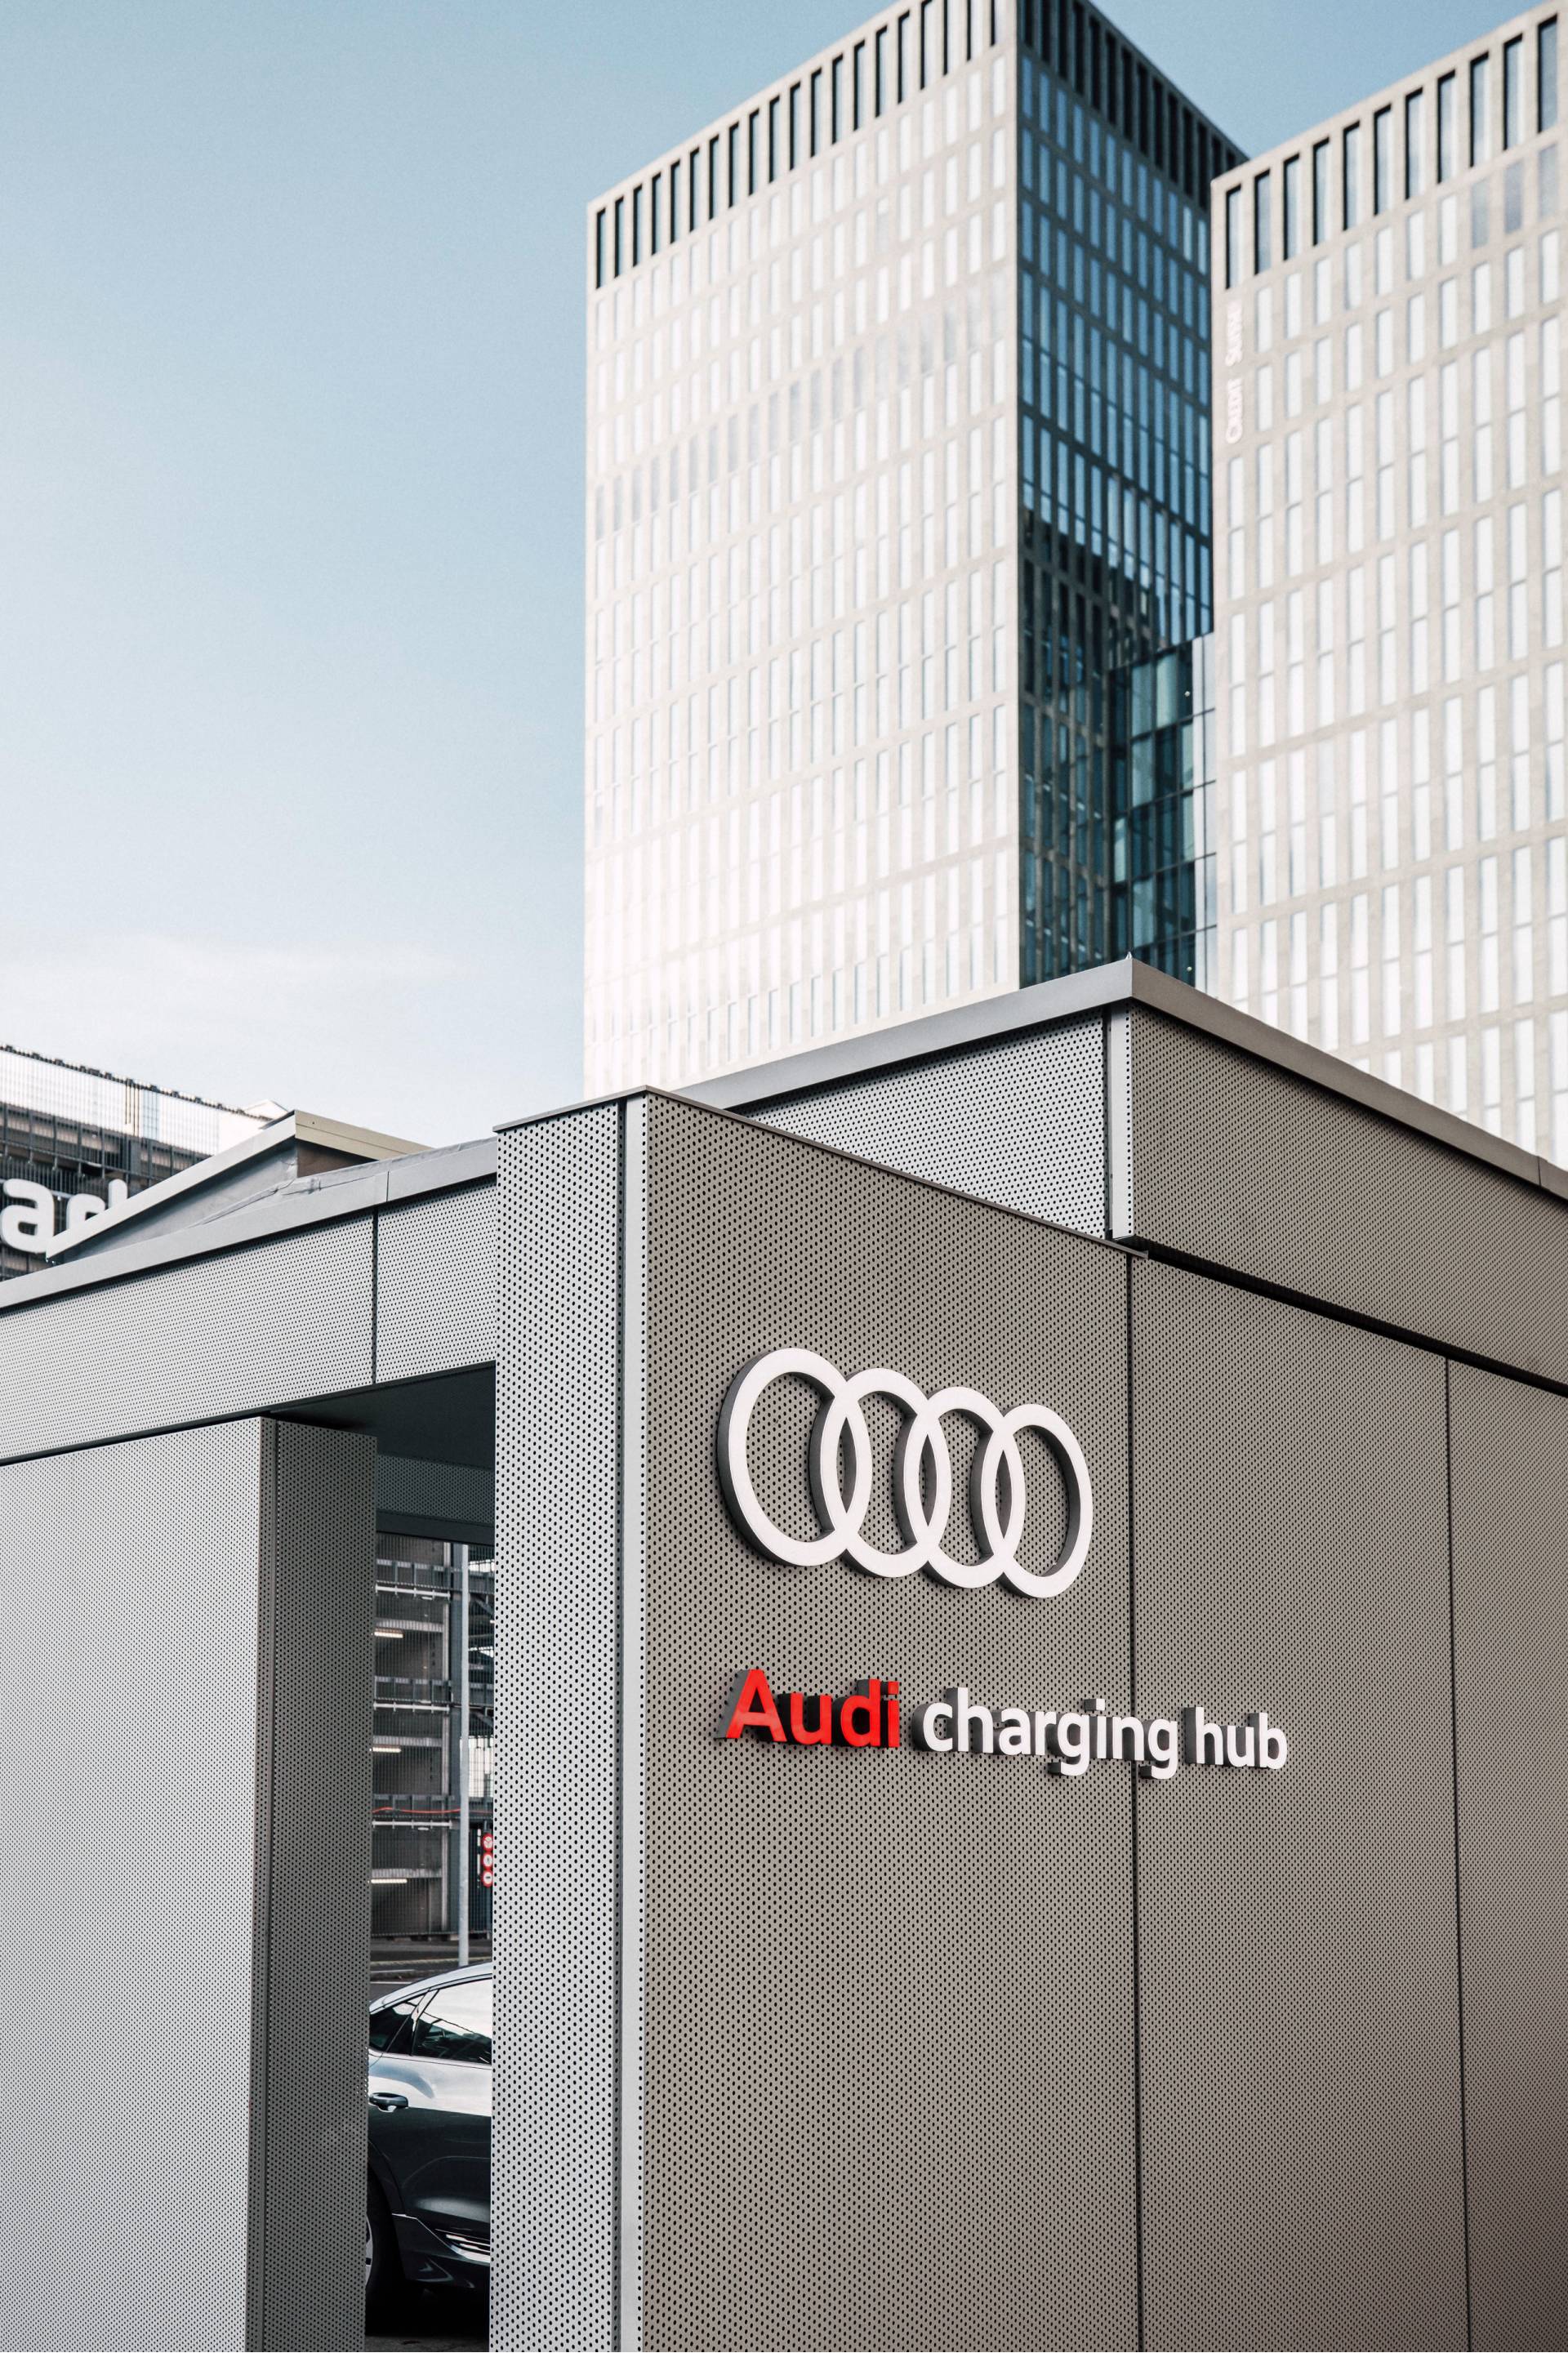 Hub ładowania Audi, w tle wieżowce.